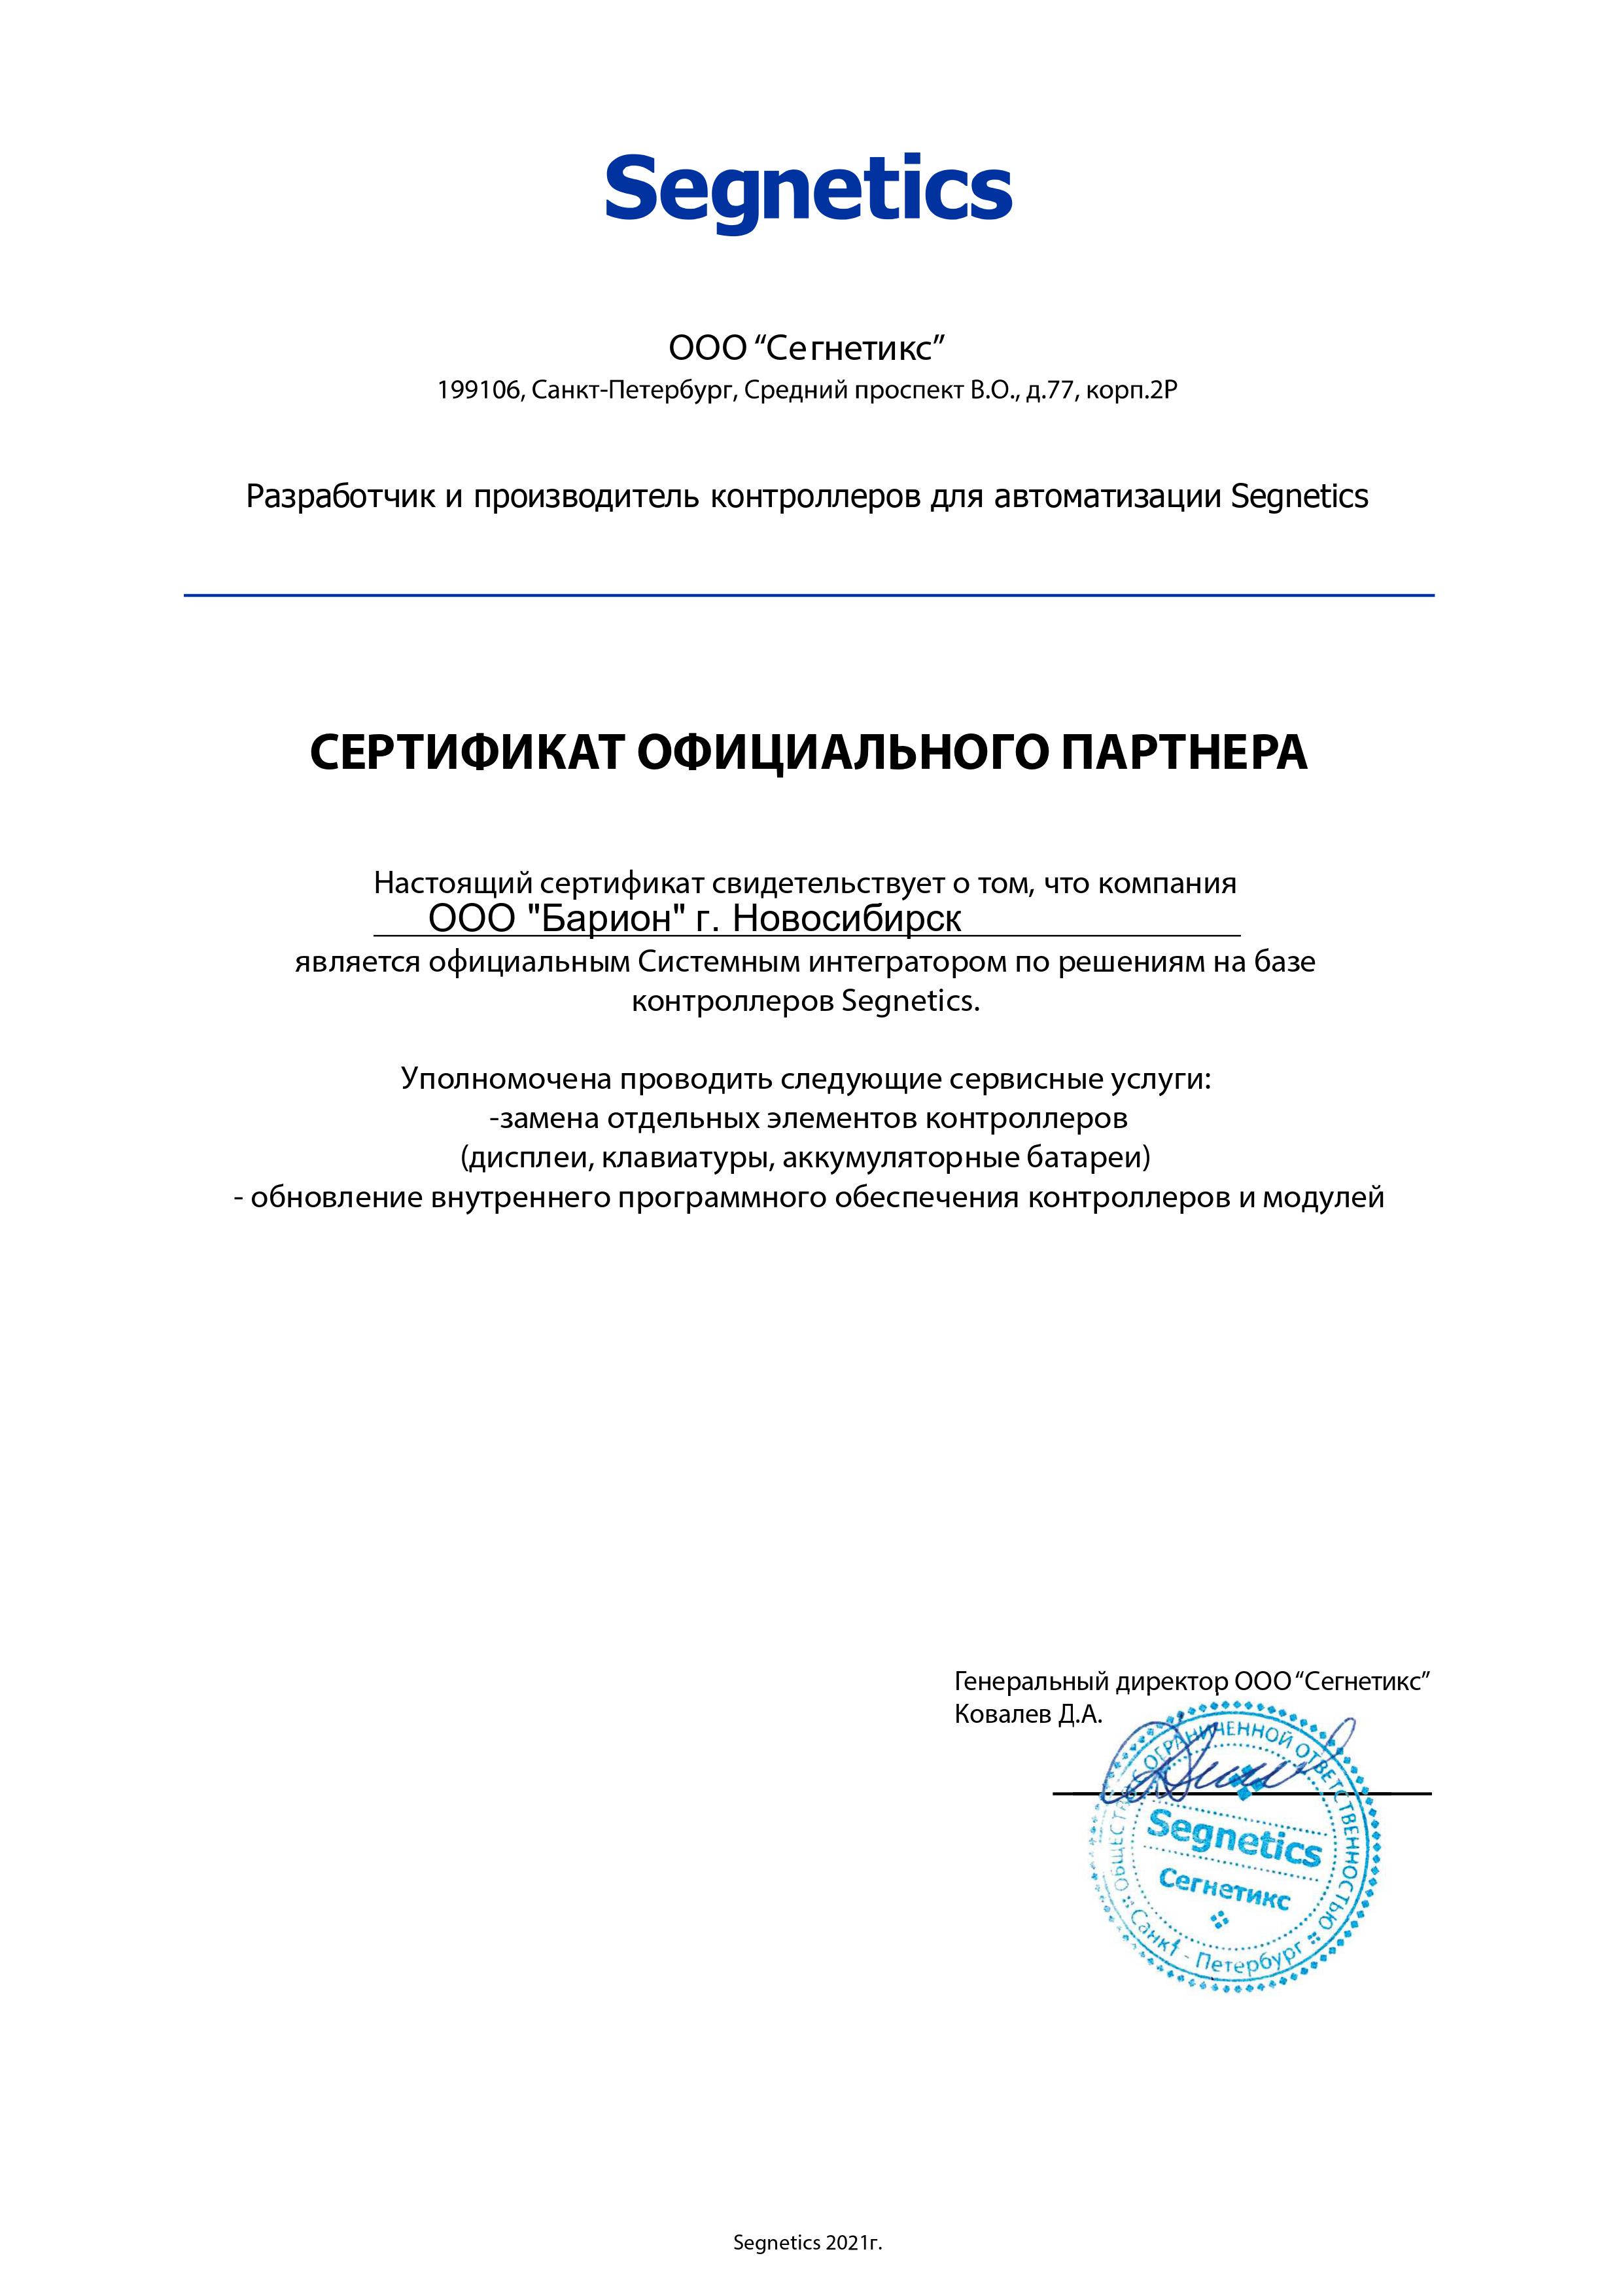 барион - сертификат сегнетикс